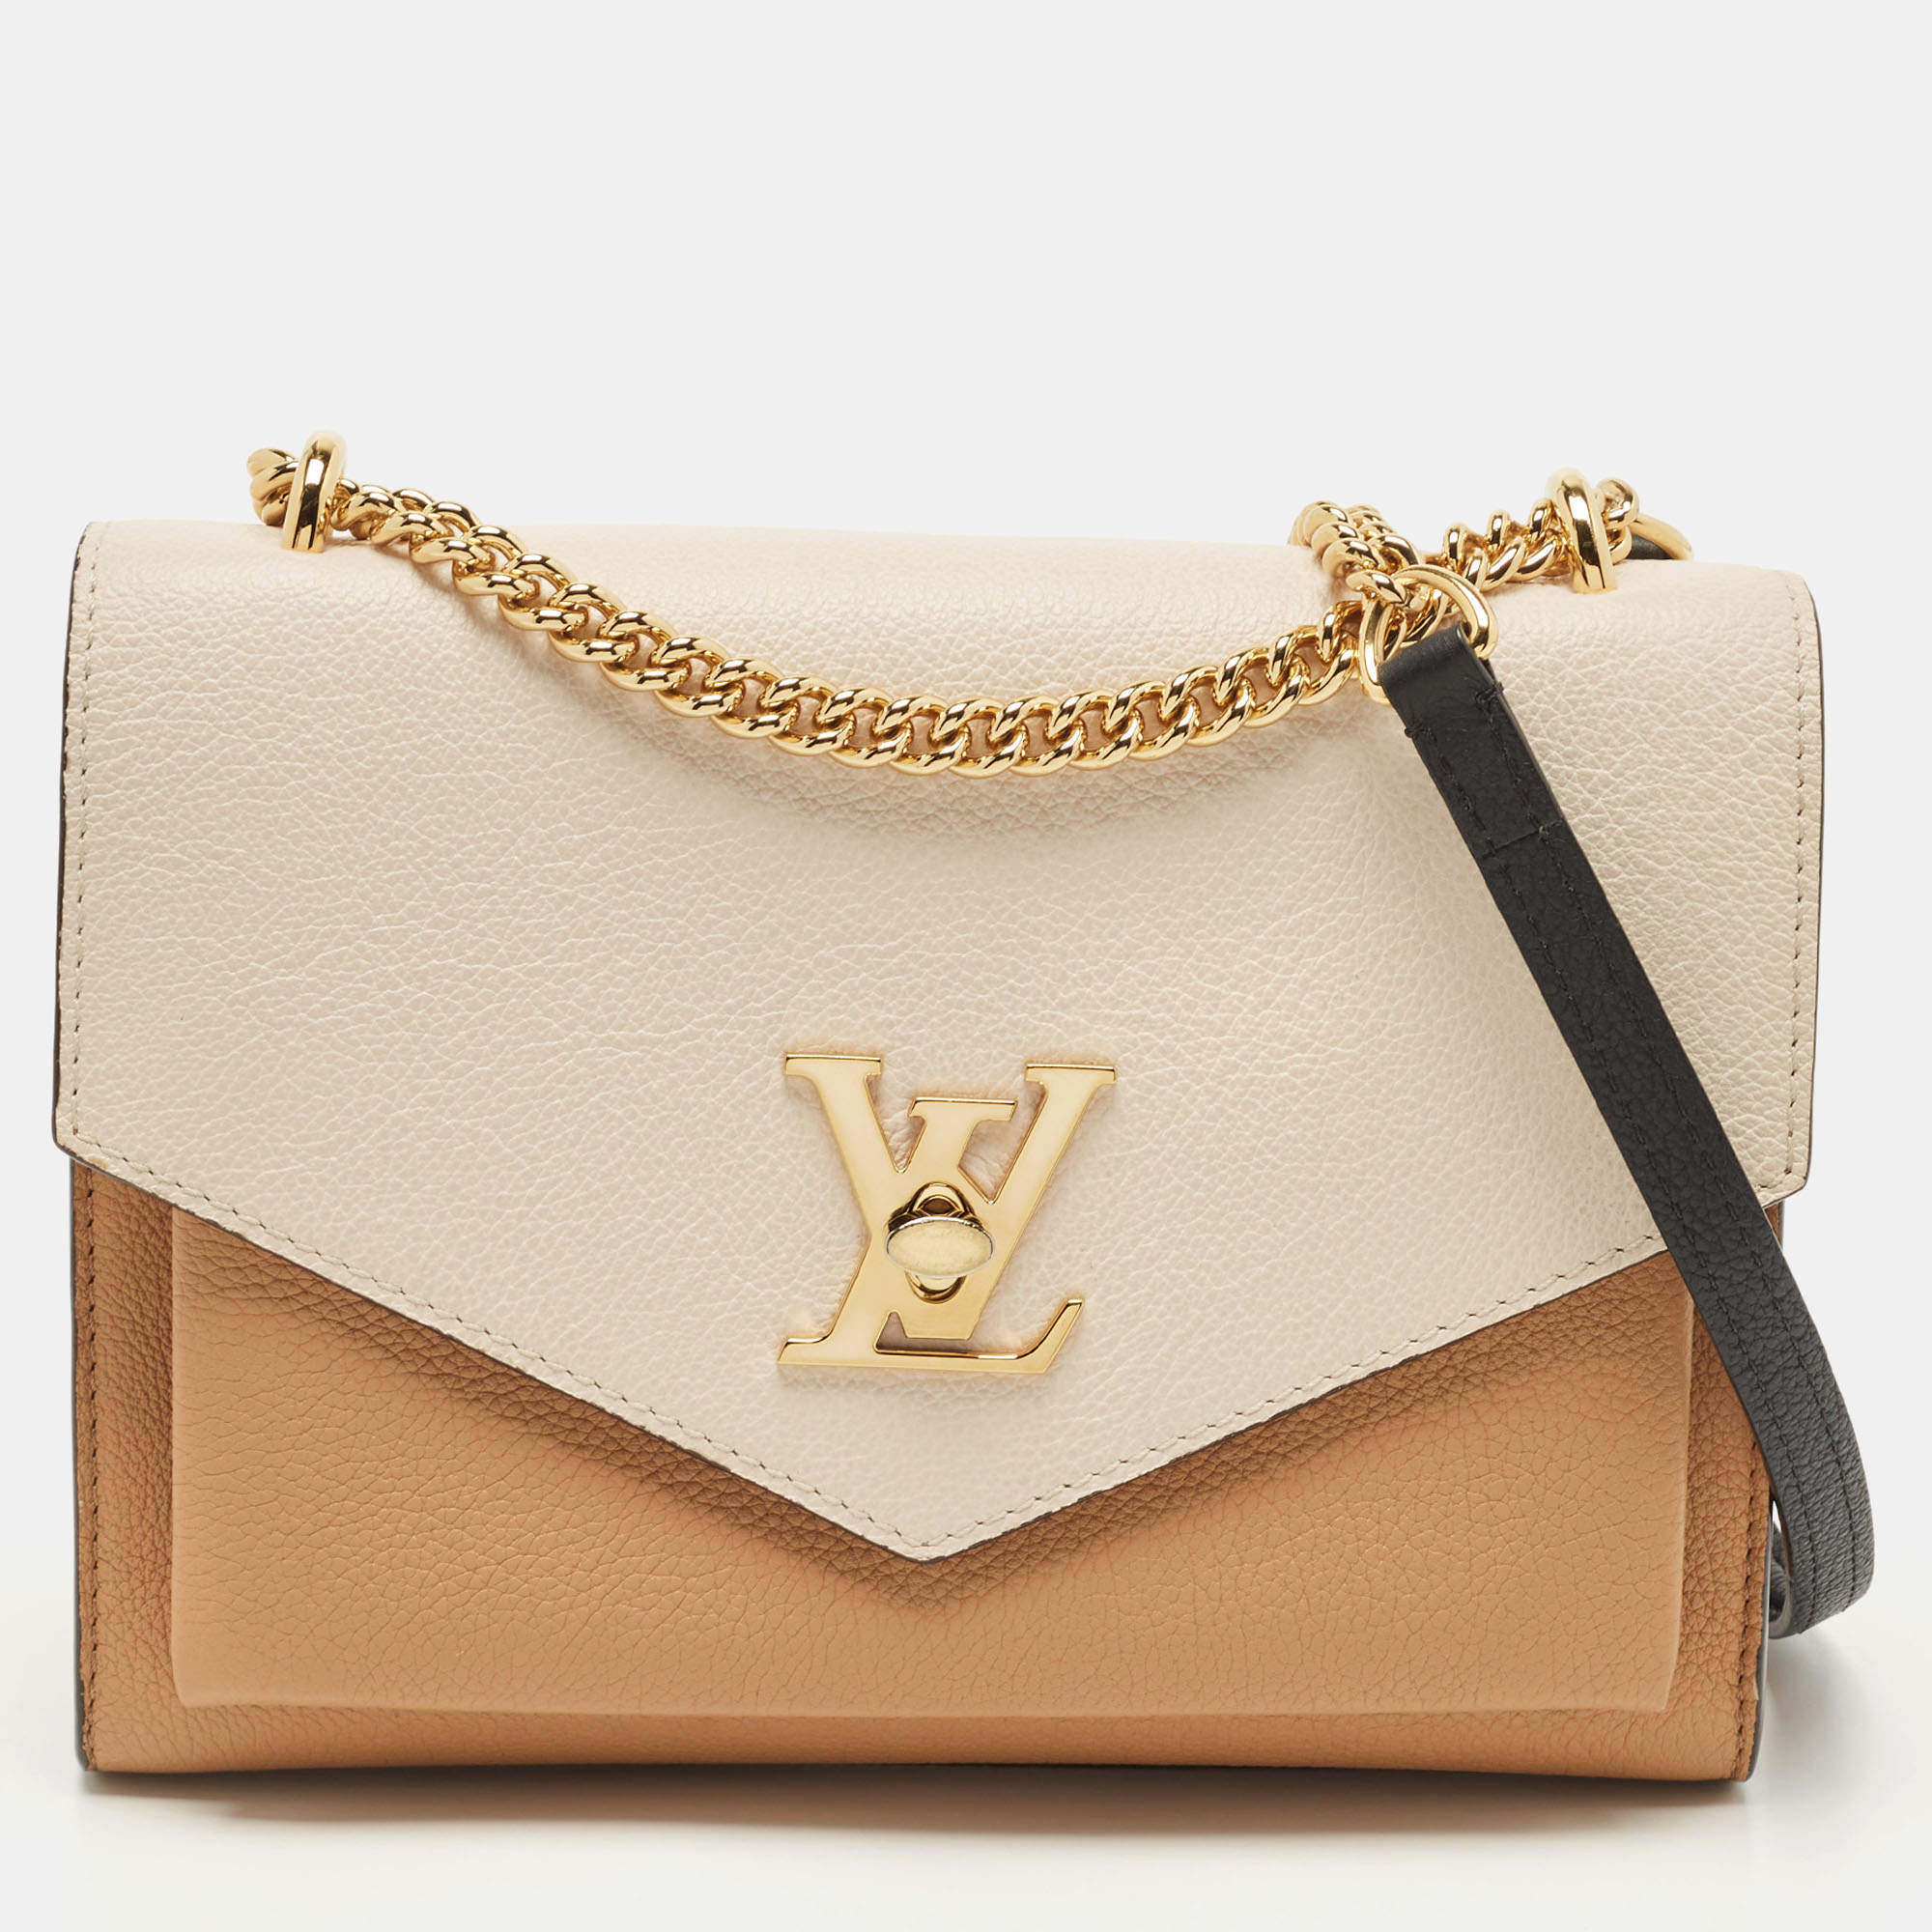 Louis Vuitton Arizona Quartz/Caramel Leather Mylockme Chain Bag at